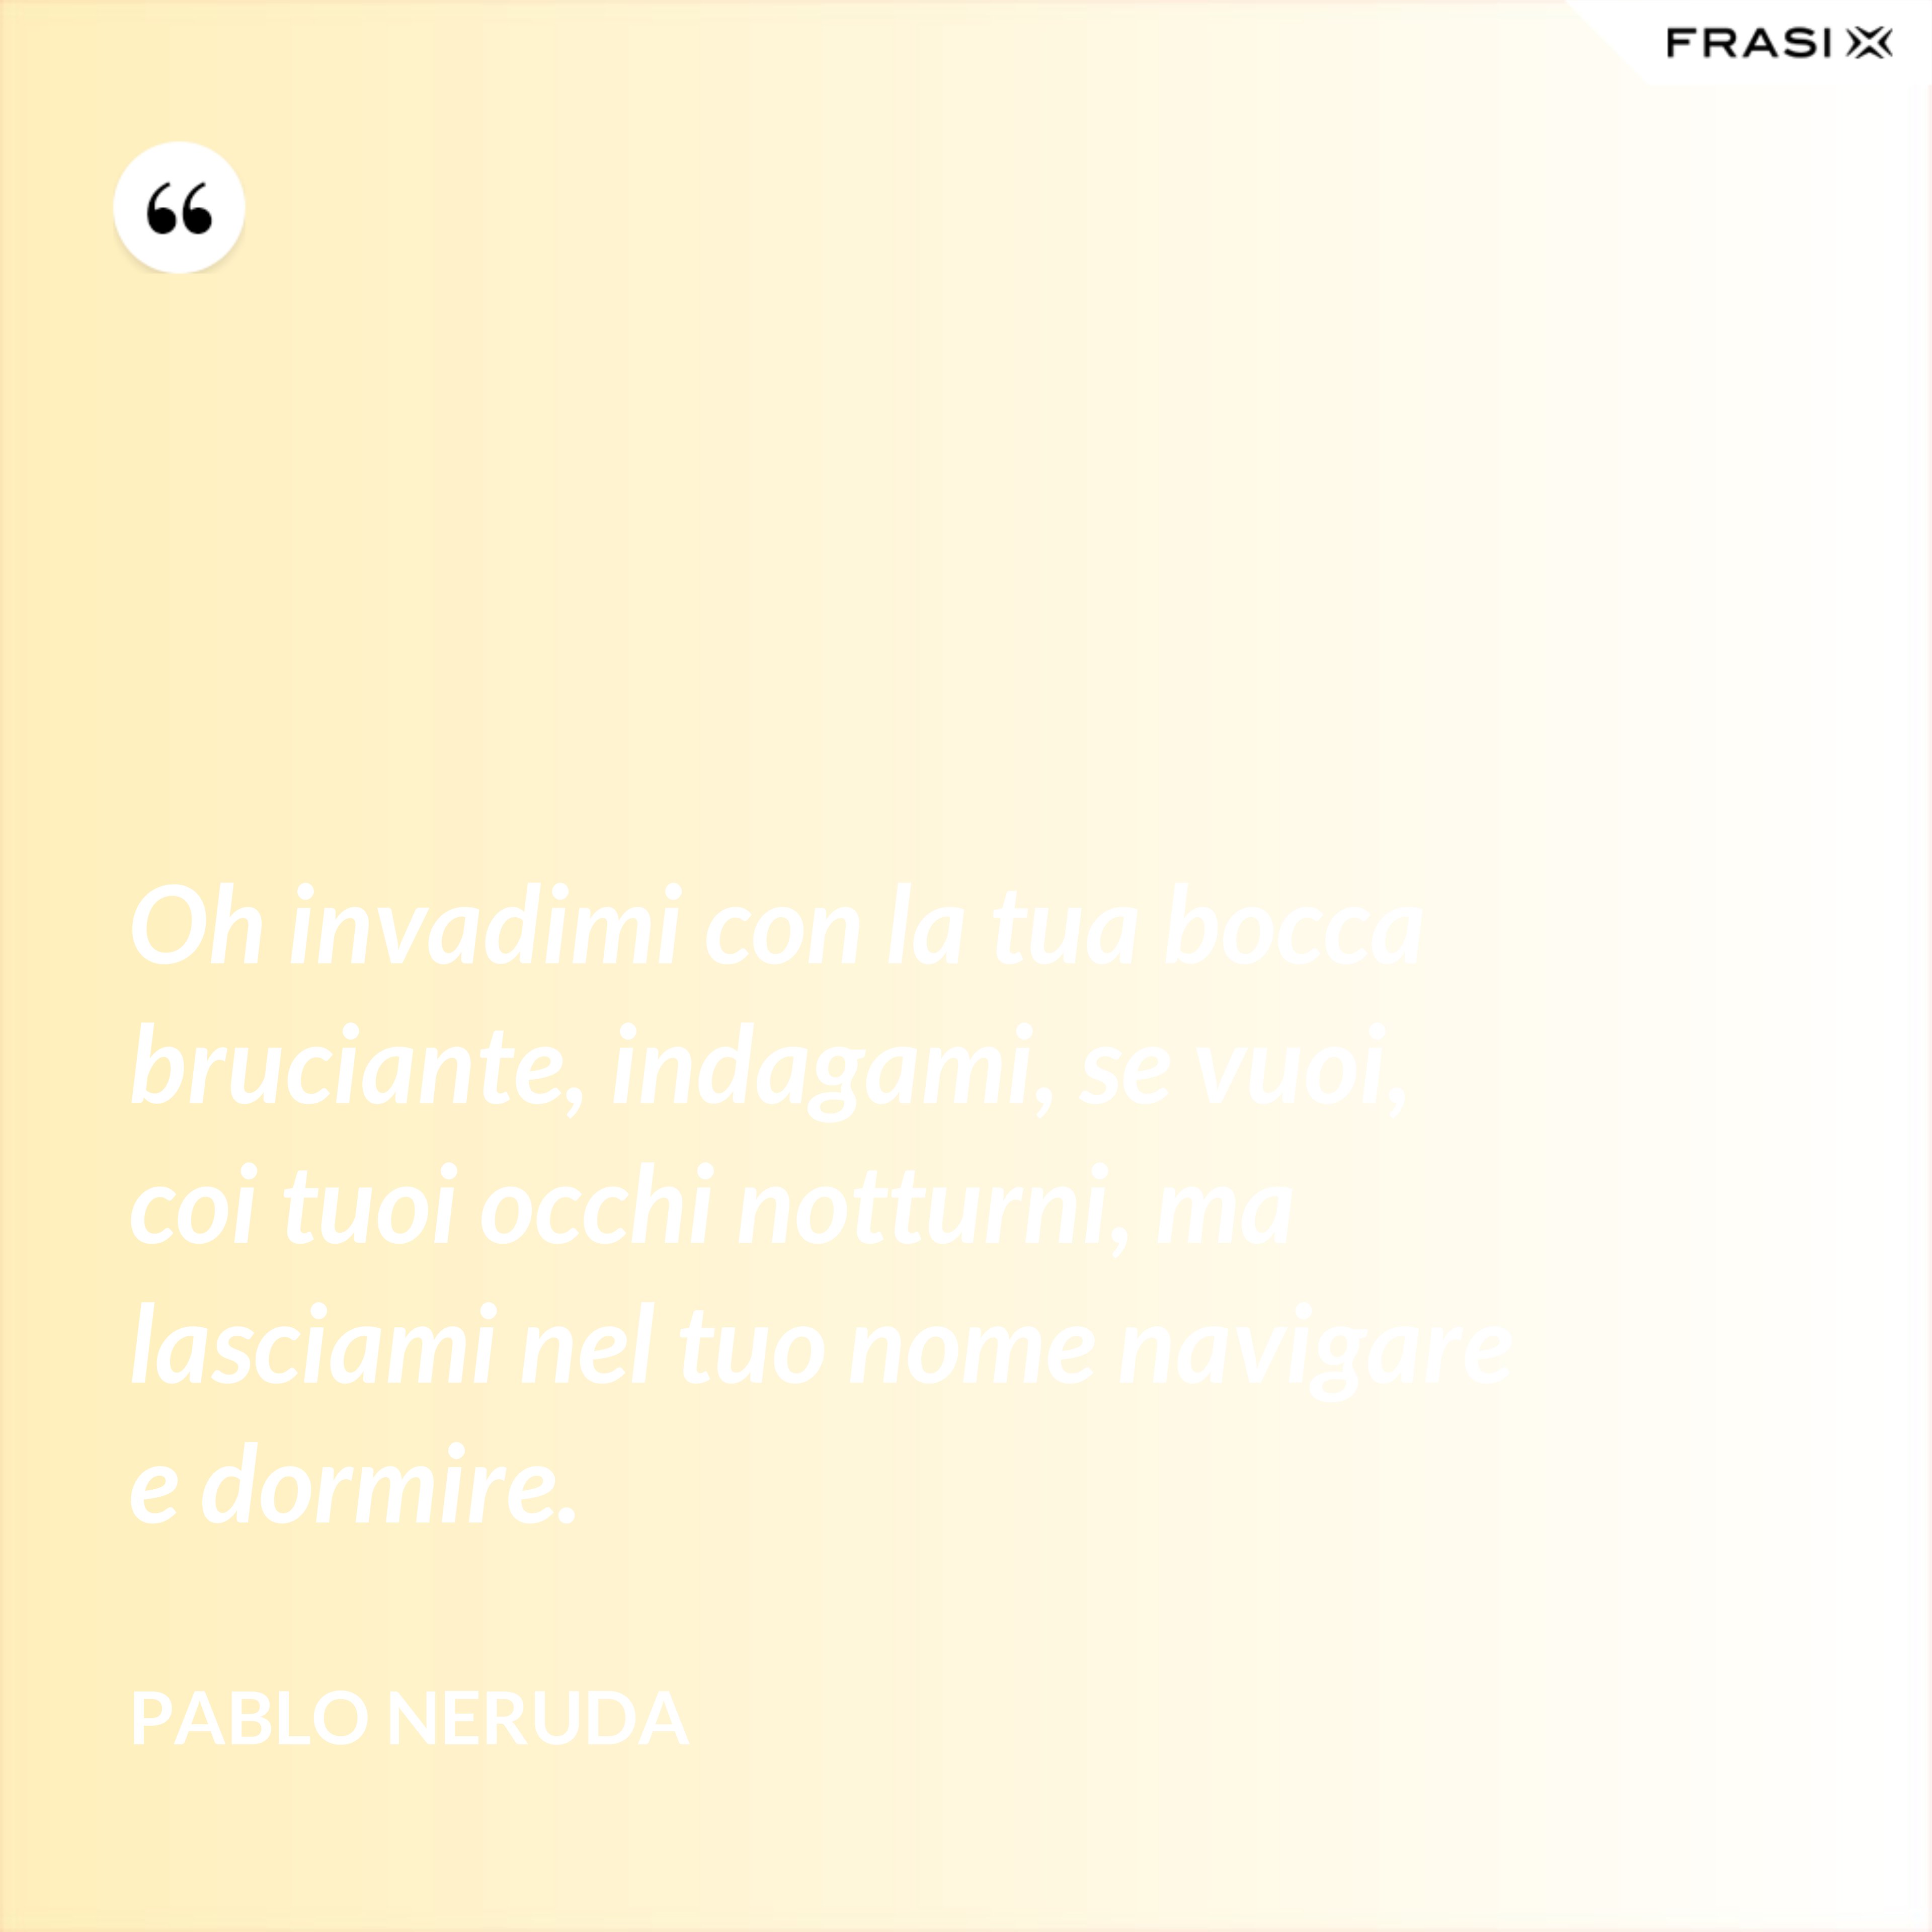 Oh invadimi con la tua bocca bruciante, indagami, se vuoi, coi tuoi occhi notturni, ma lasciami nel tuo nome navigare e dormire. - Pablo Neruda